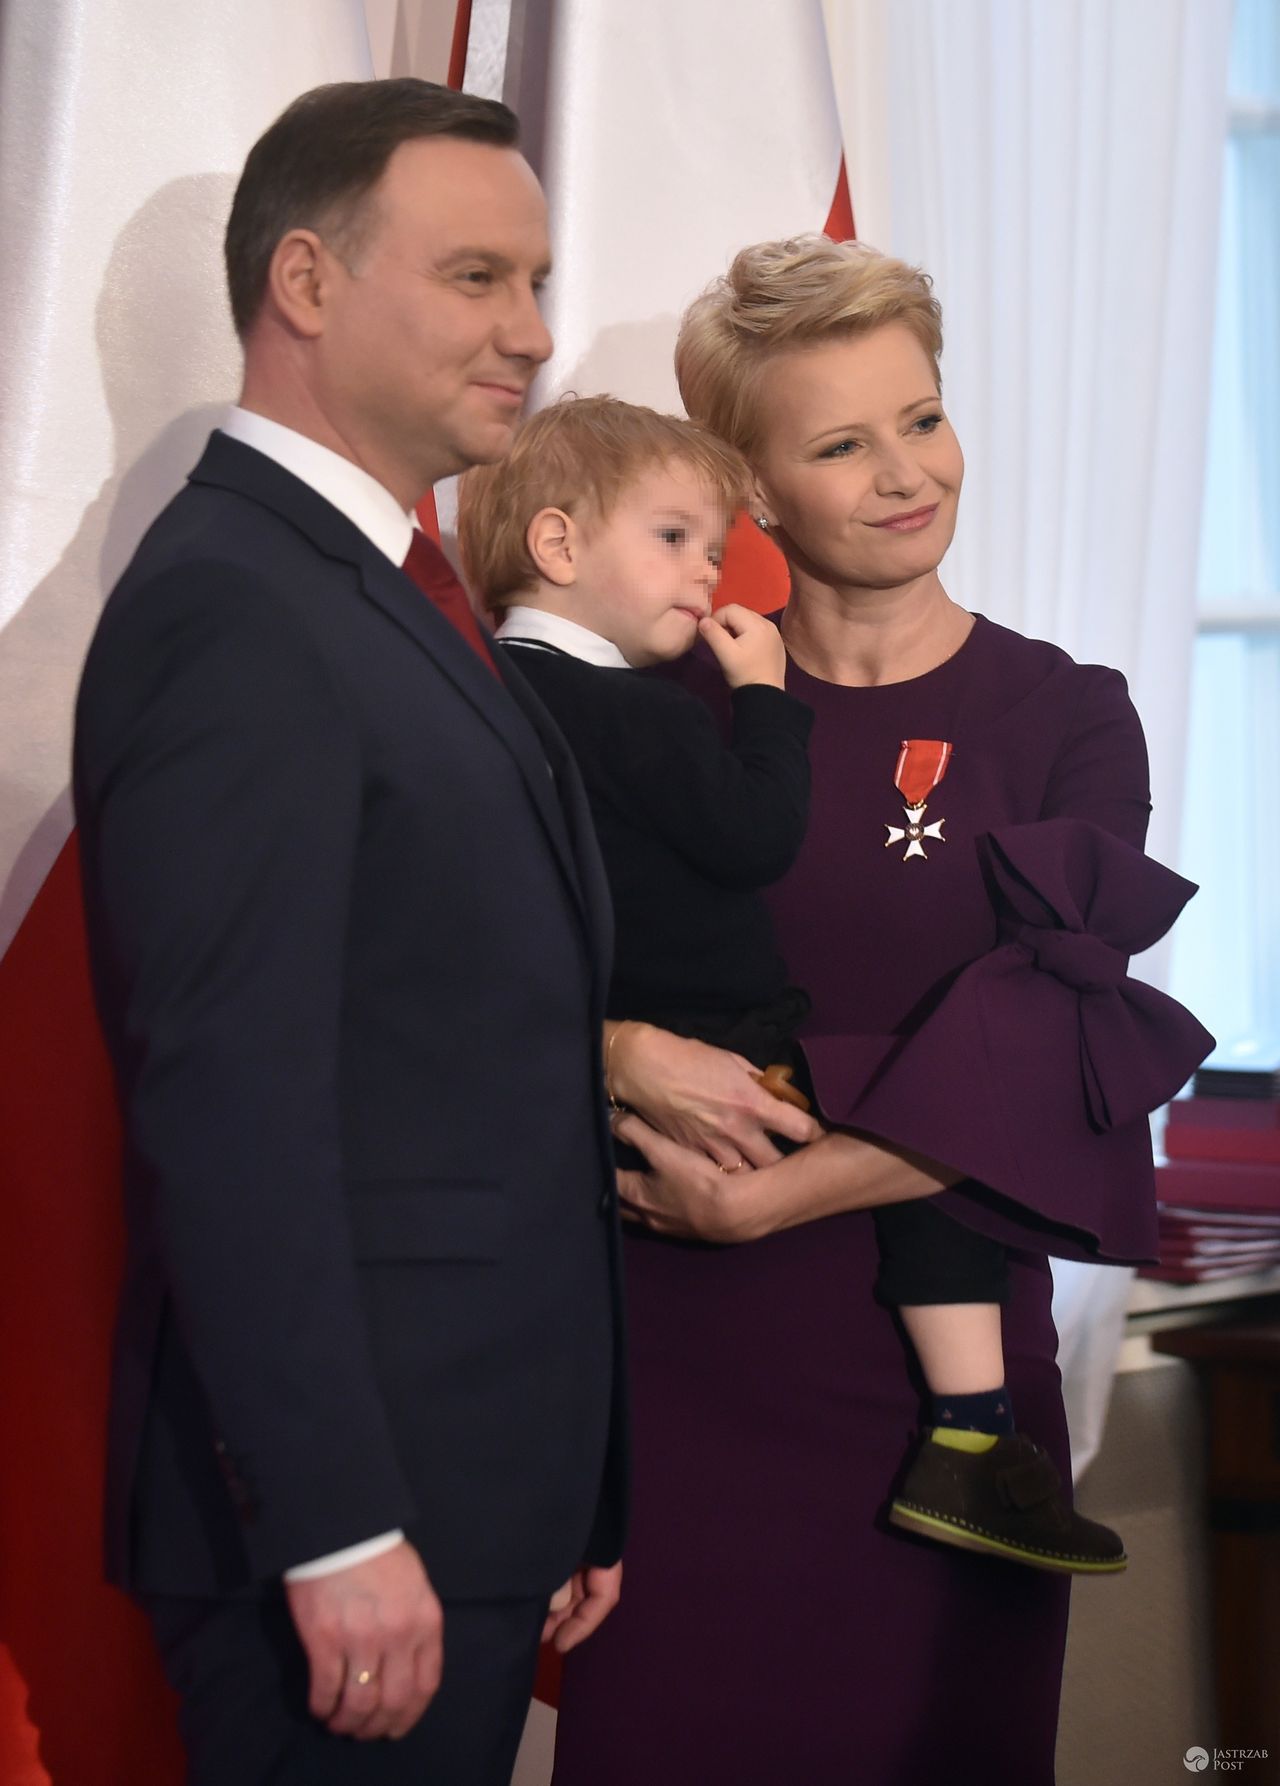 Małgorzata Kożuchowska z synem u Andrzeja Dudy w Święto Niepodległości 2016. Jaki odznaczenie dostała?